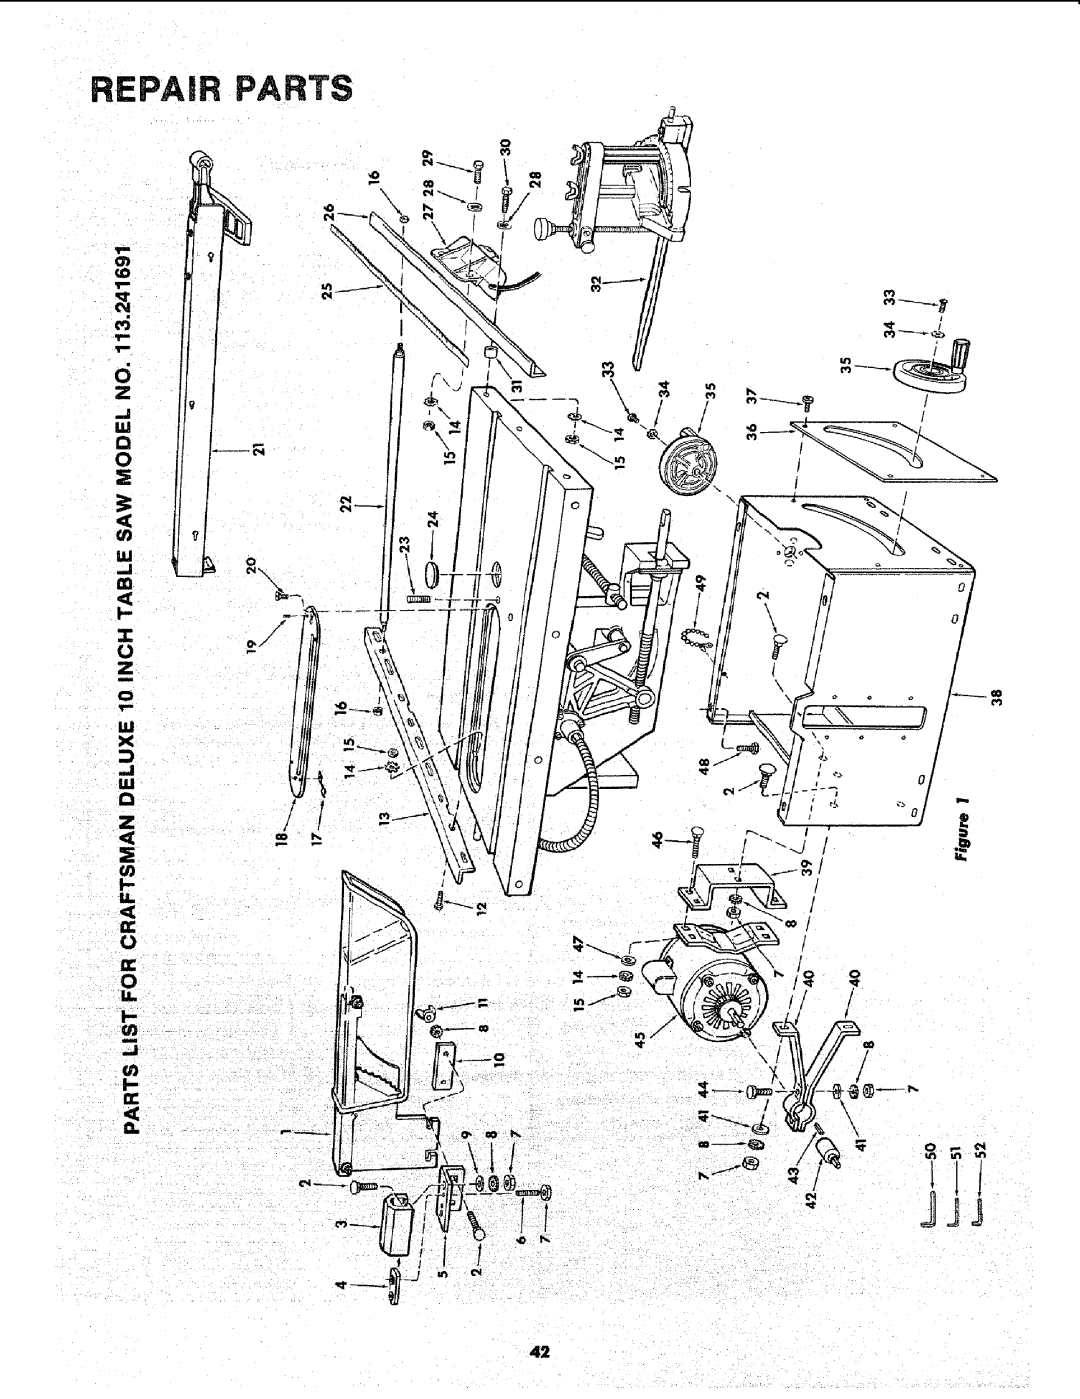 Sears 113.241591 owner manual Repair Parts 